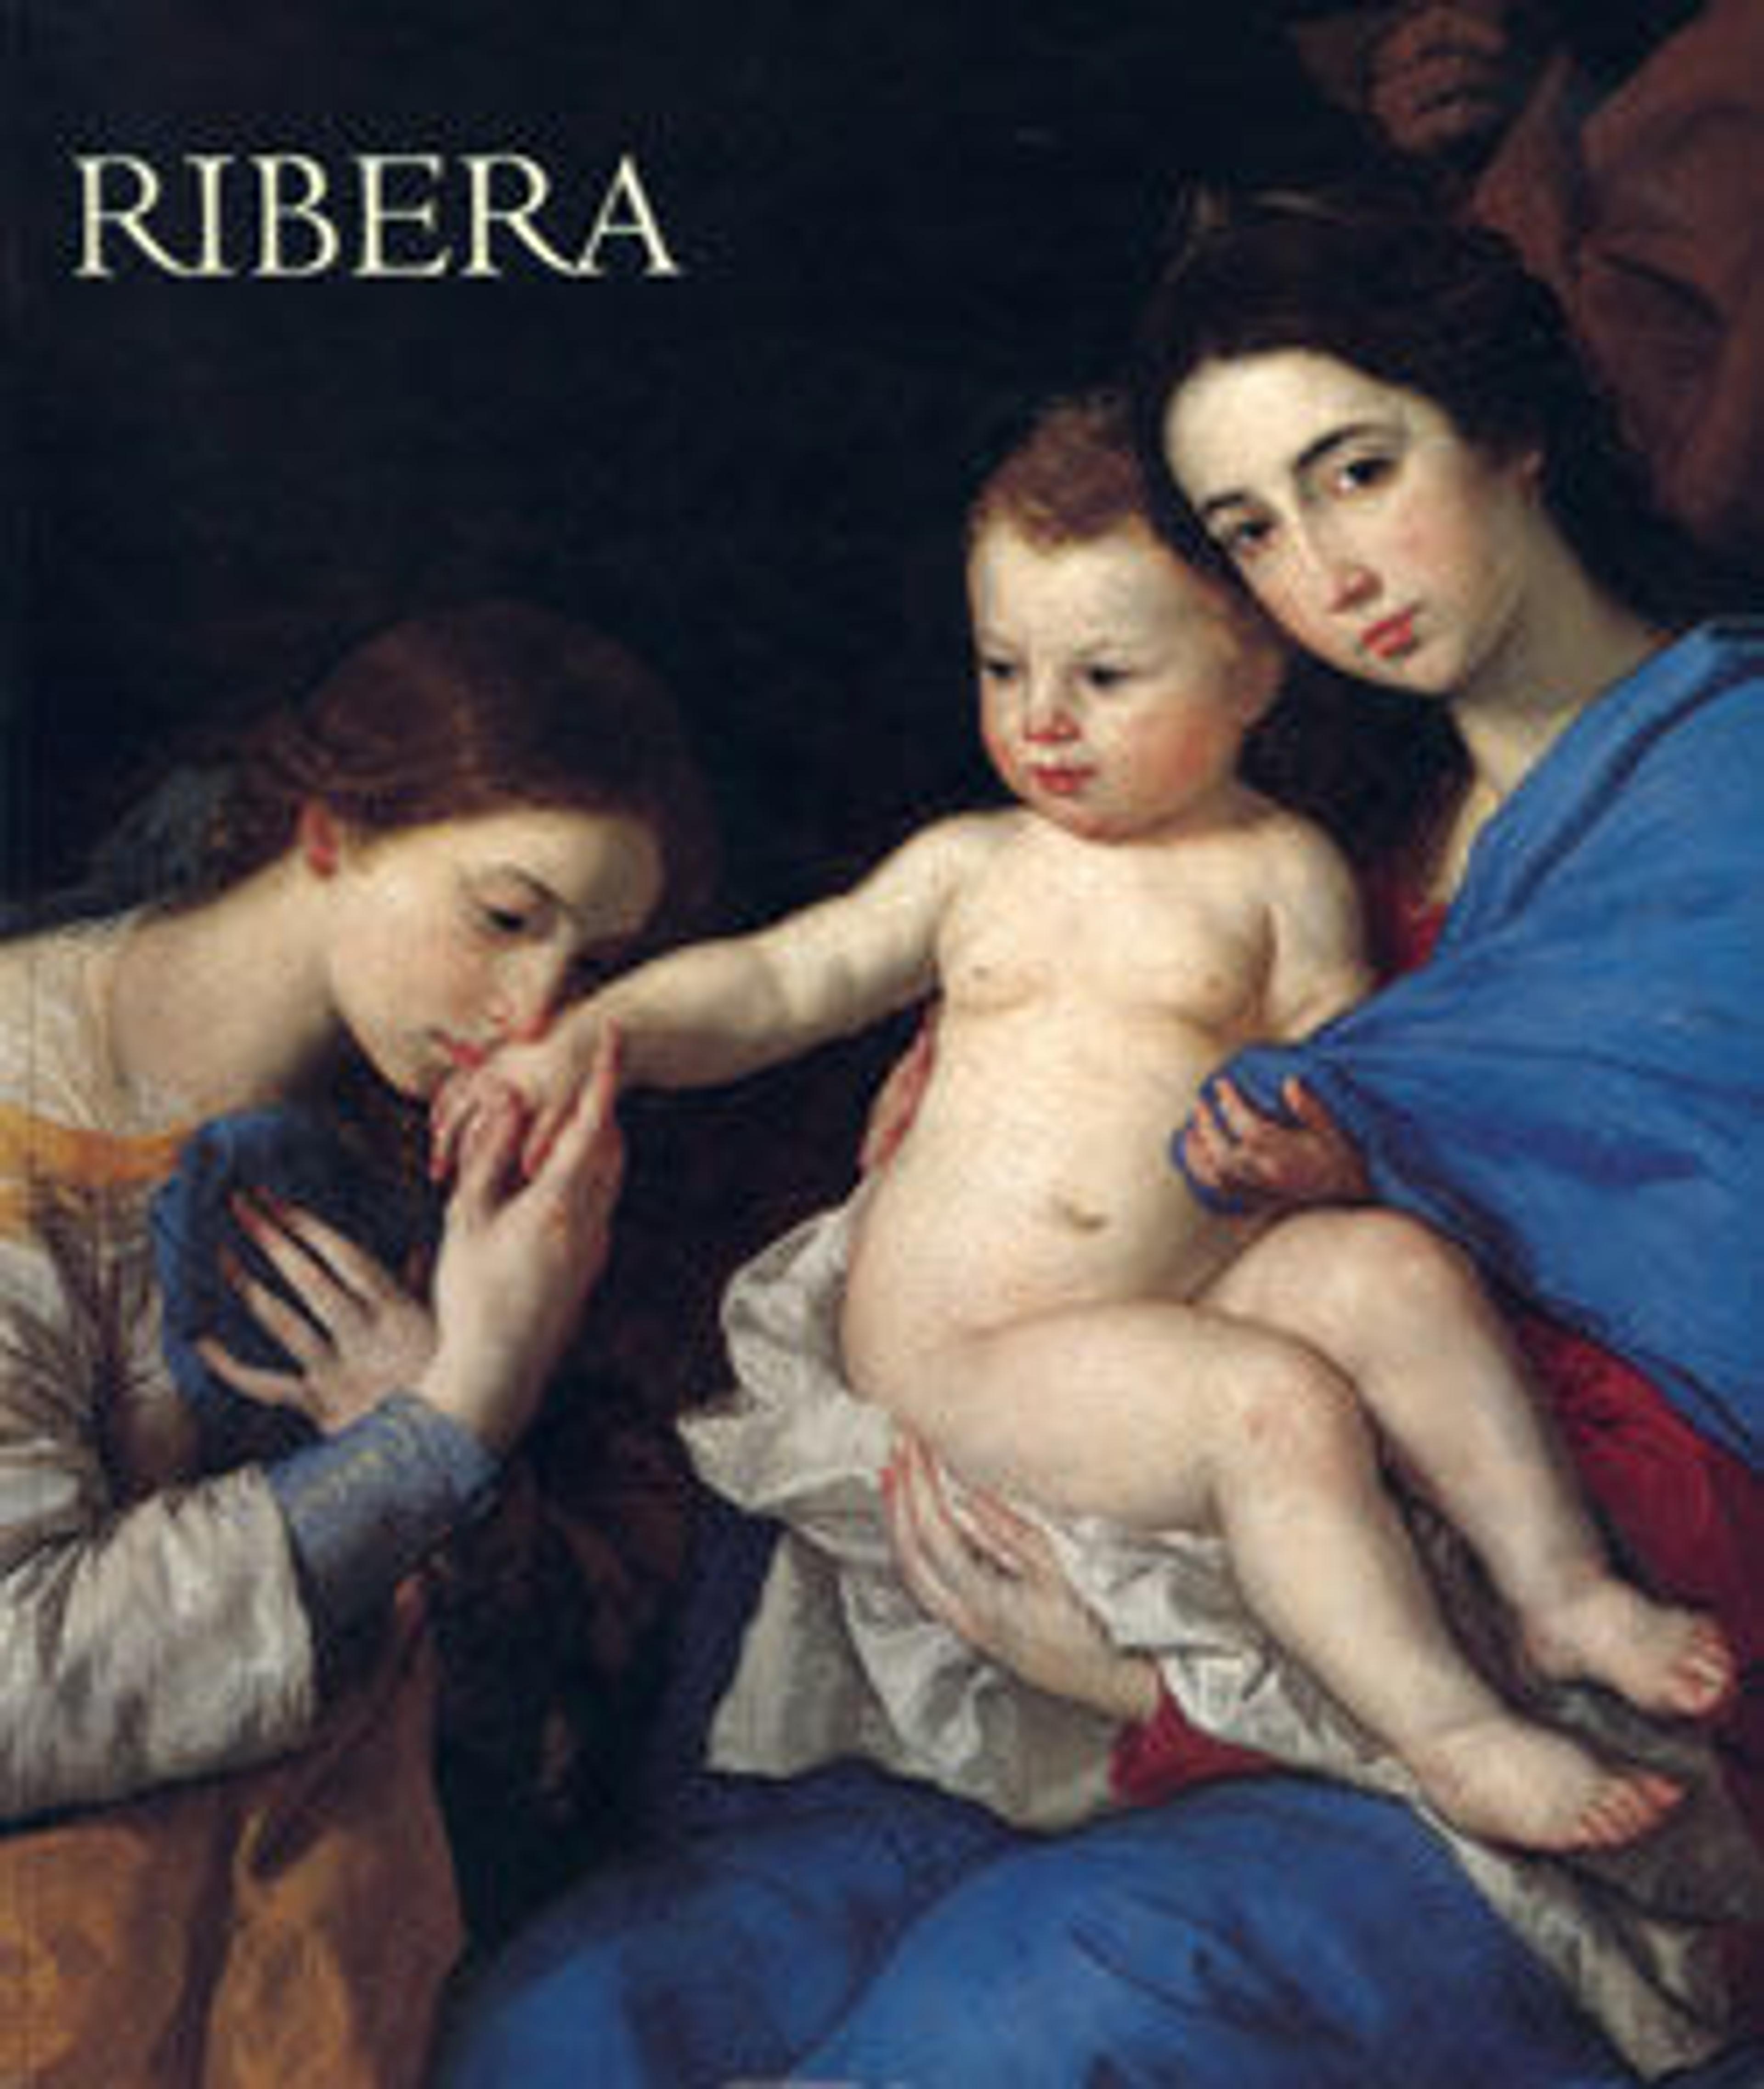 Jusepe de Ribera, 1591-1652